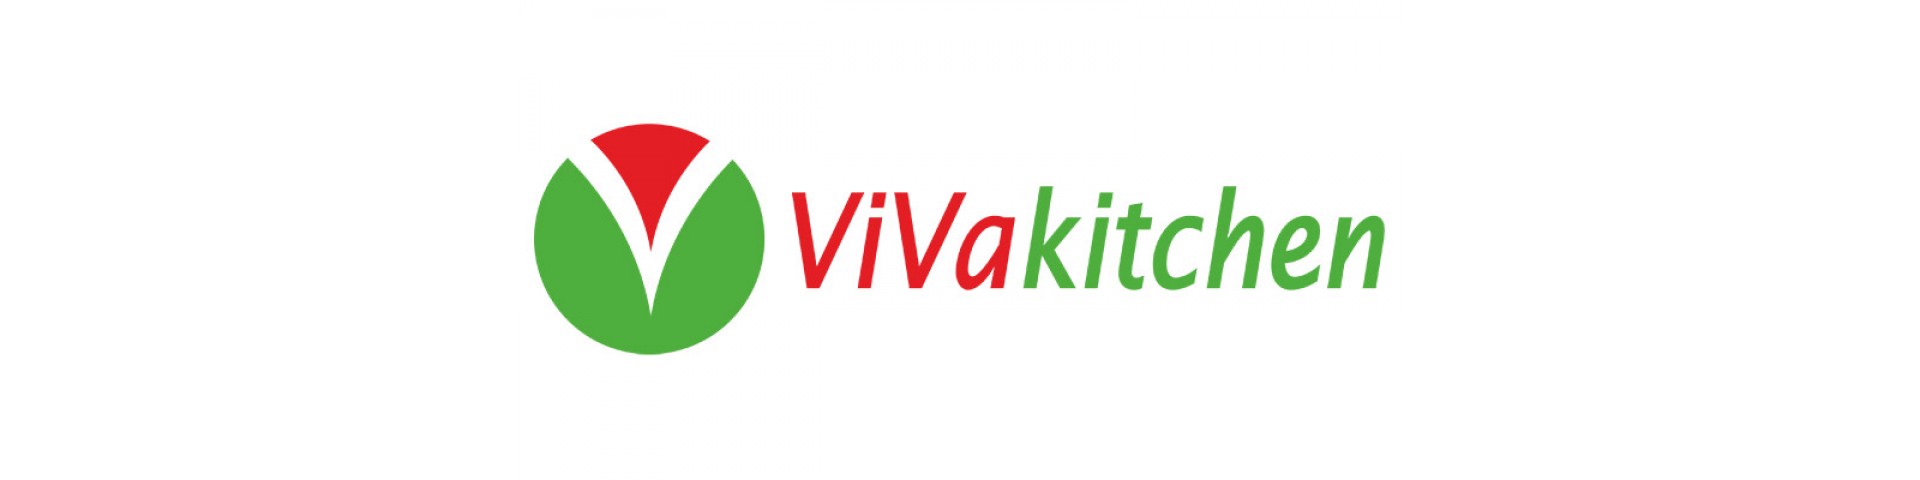 Кухни Белоруссии ViVakitchen класса Люкс по доступным ценам 